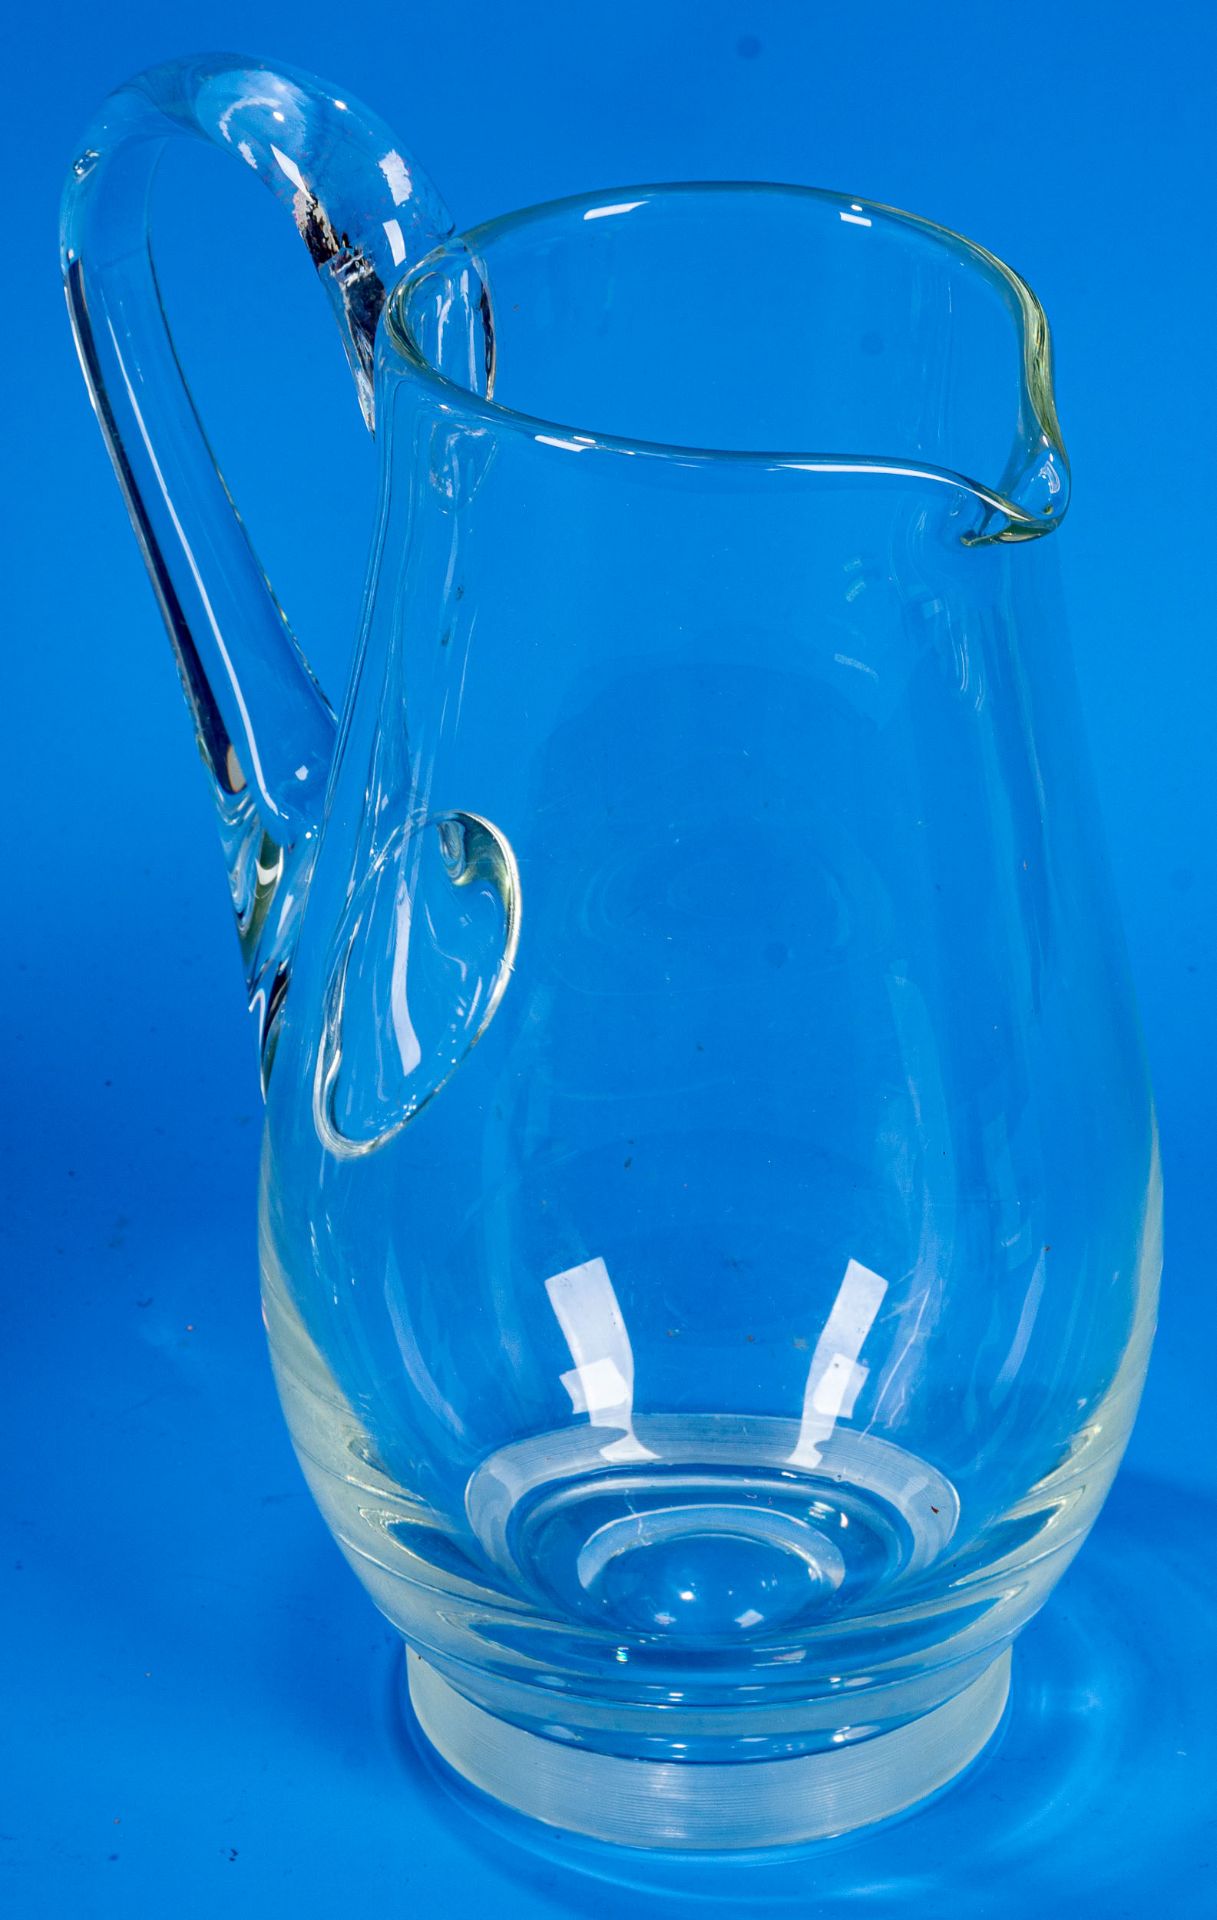 3teiliges Konvolut versch. Saftkrüge/Wasserkrüge. Farblose Glaskörper mit seitlichem Griff, teilwei - Image 9 of 9